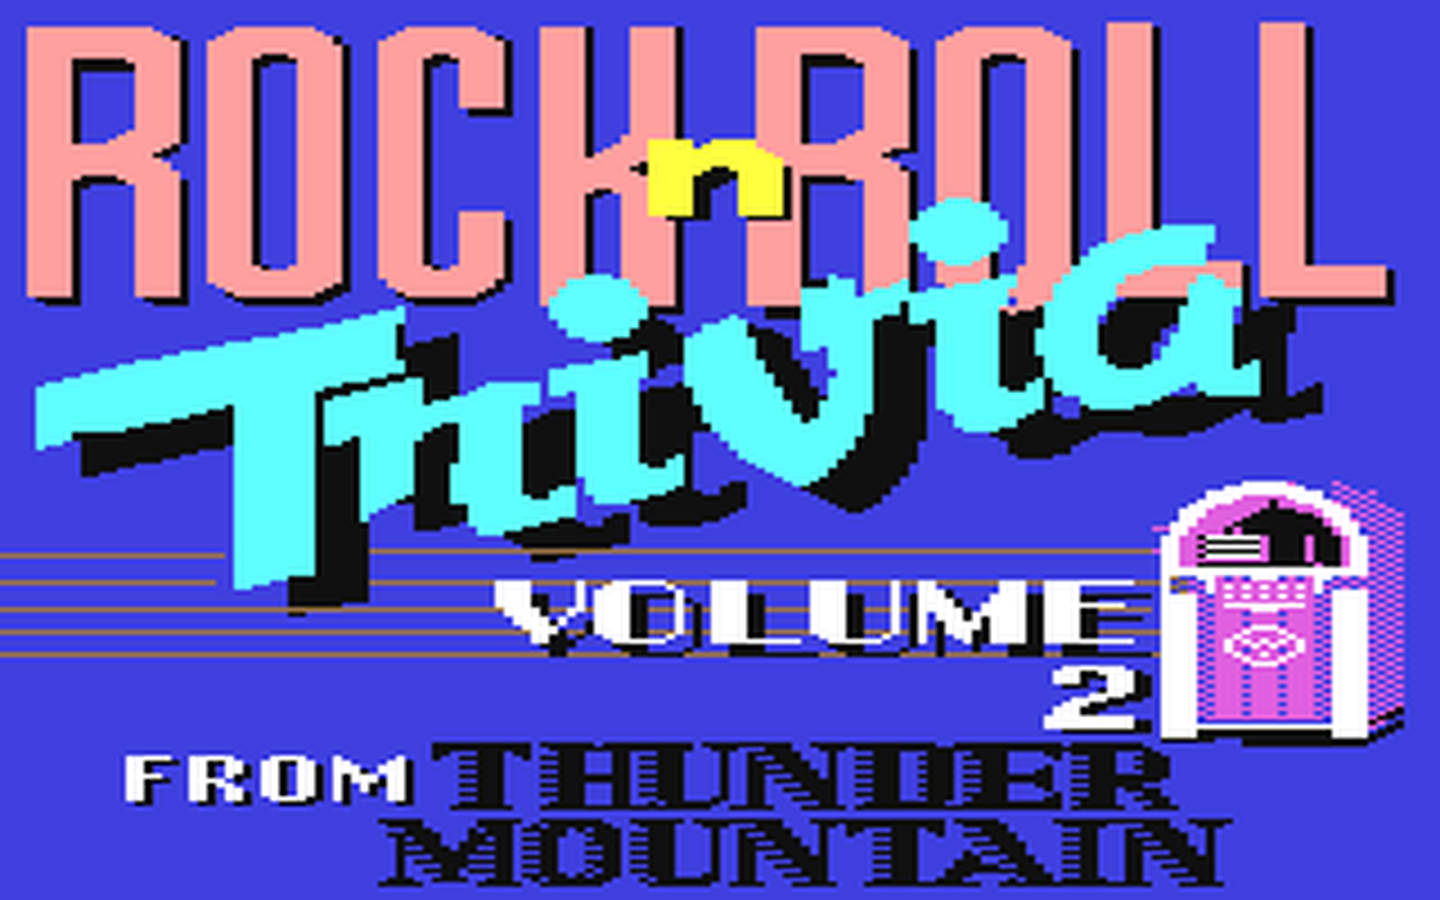 C64 GameBase Rock'n_Roll_Trivia_-_Volume_2 Thunder_Mountain/Prism_Leisure_Corp._(PLC) 1986